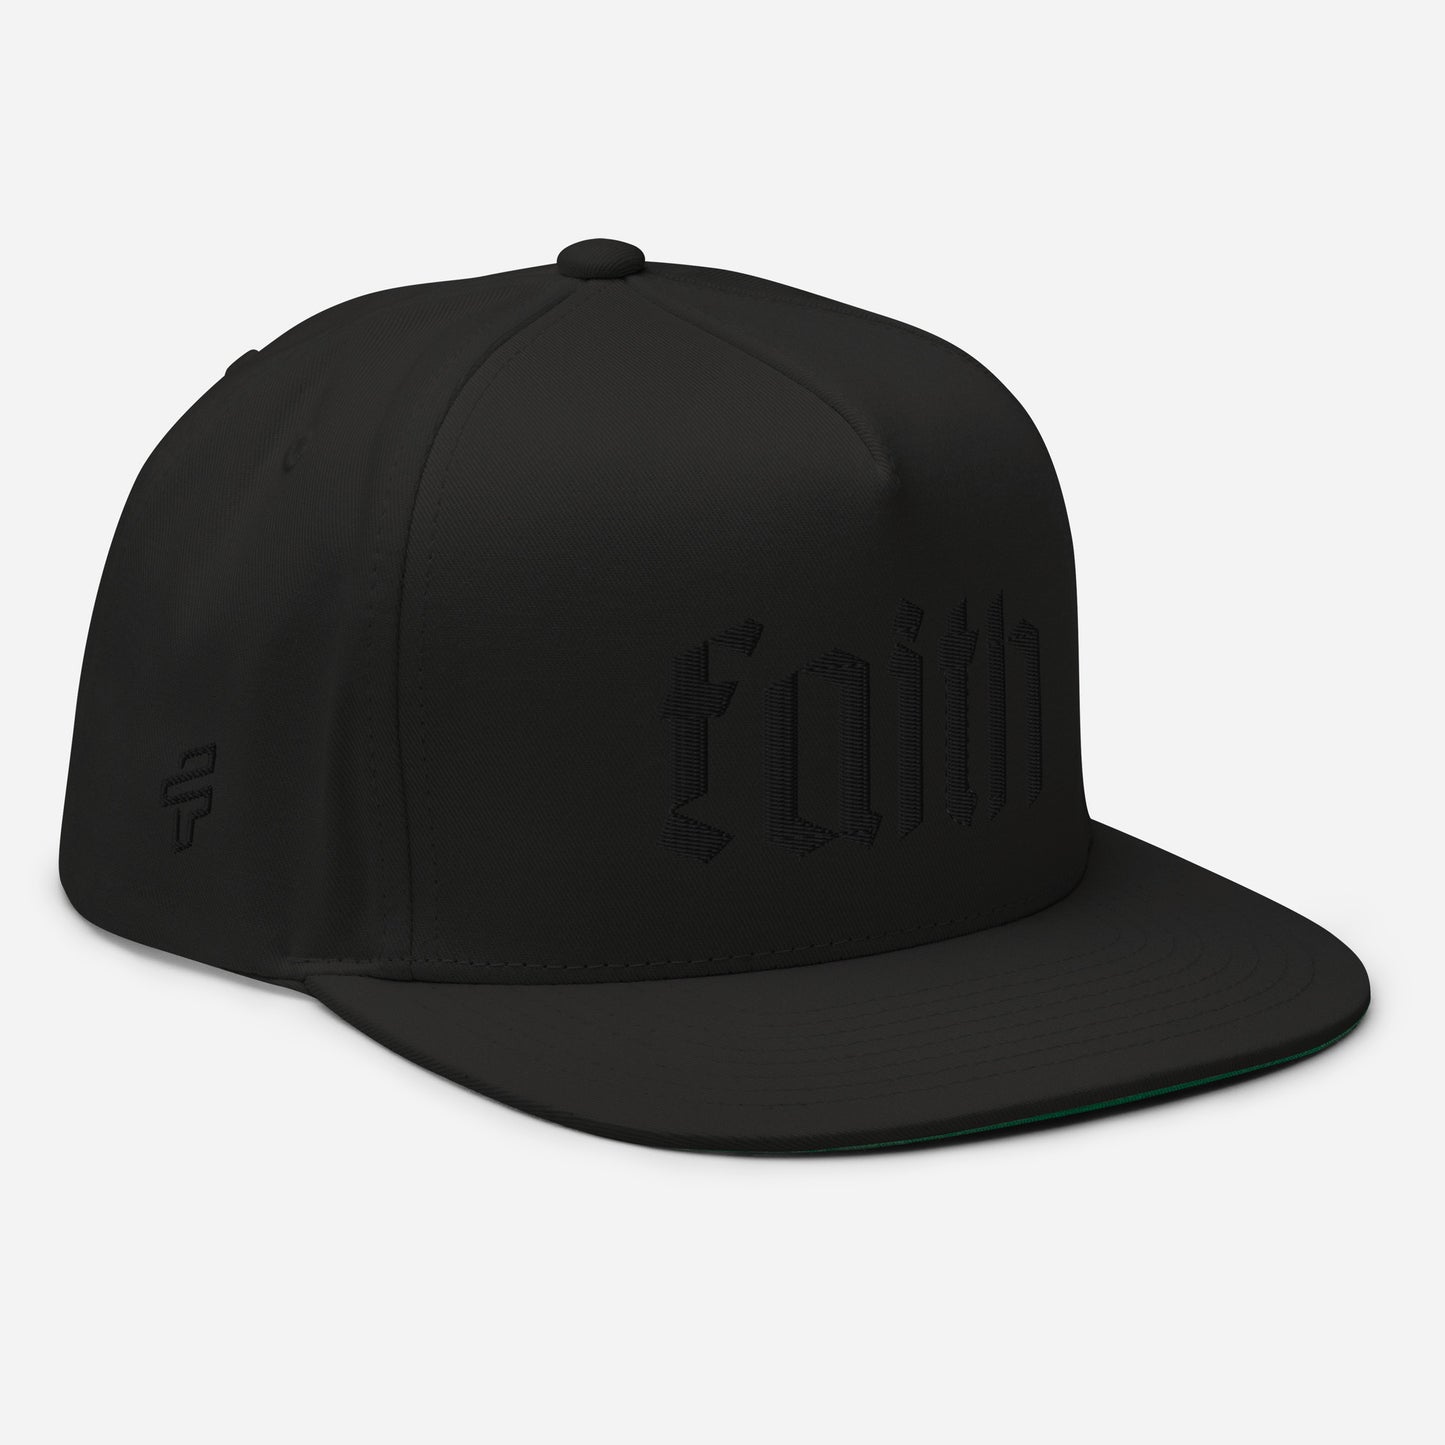 Black on Black Faith Snapback Hat